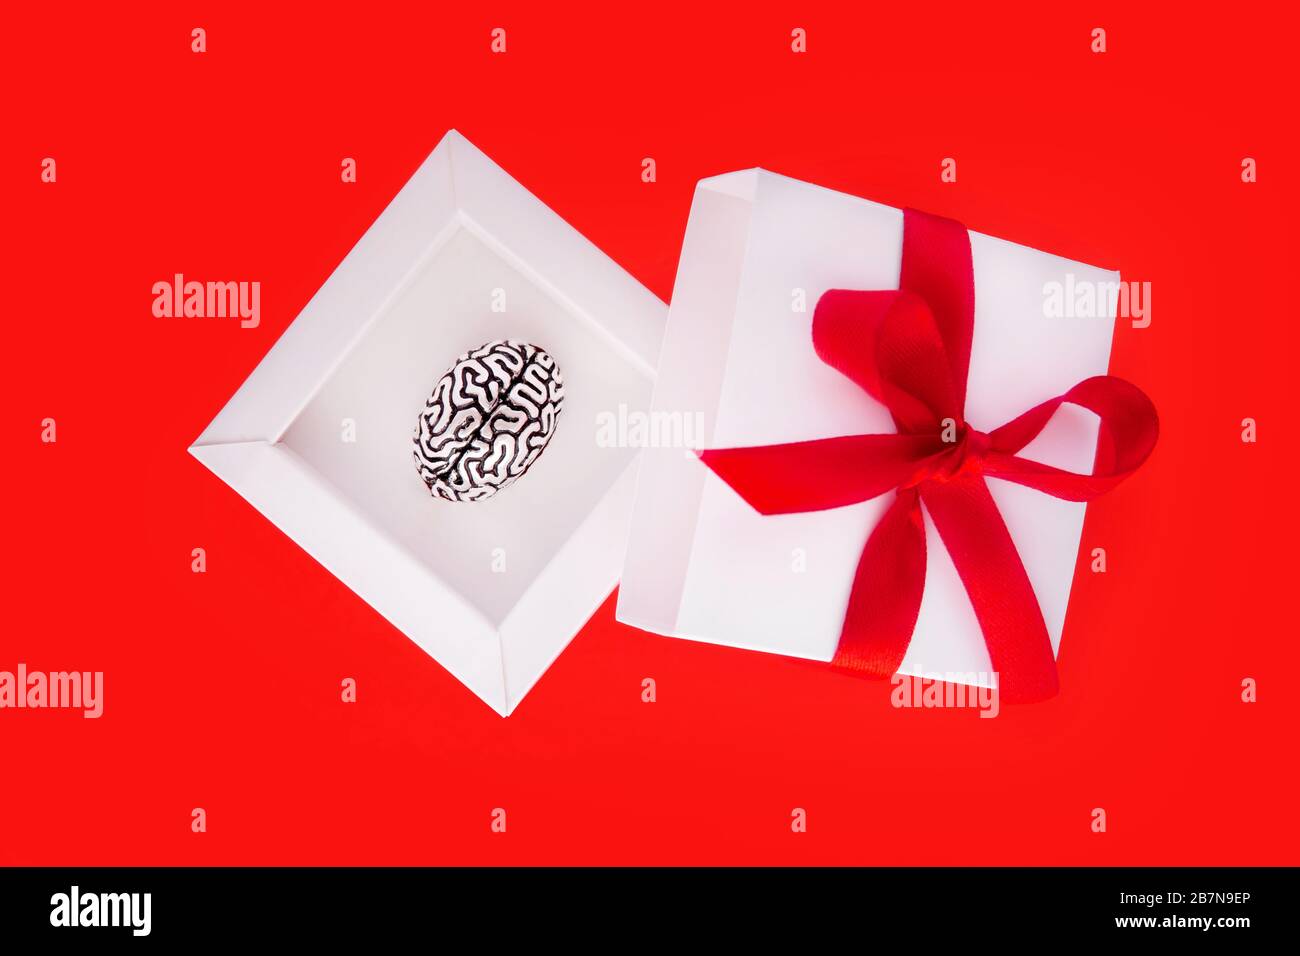 Regalo creativo a un genio in forma di una piccola copia metallica di un cervello umano all'interno di una scatola regalo bianca con un nastro rosso e arco sulla copertina. Foto Stock